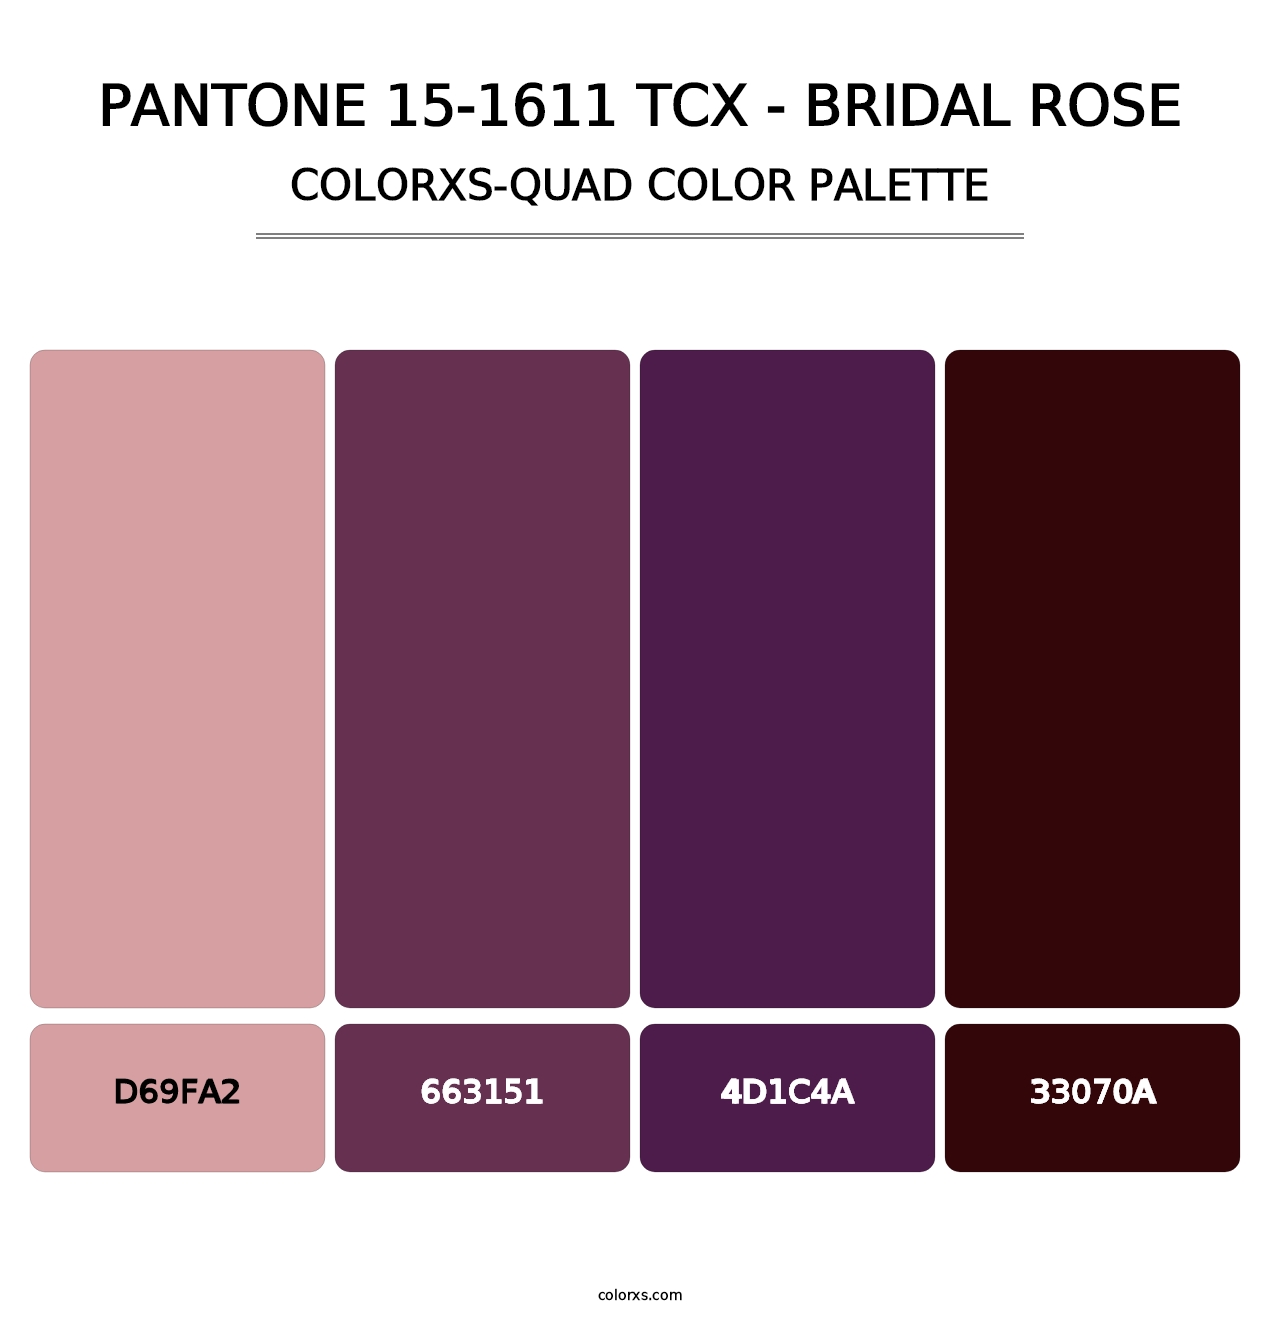 PANTONE 15-1611 TCX - Bridal Rose - Colorxs Quad Palette